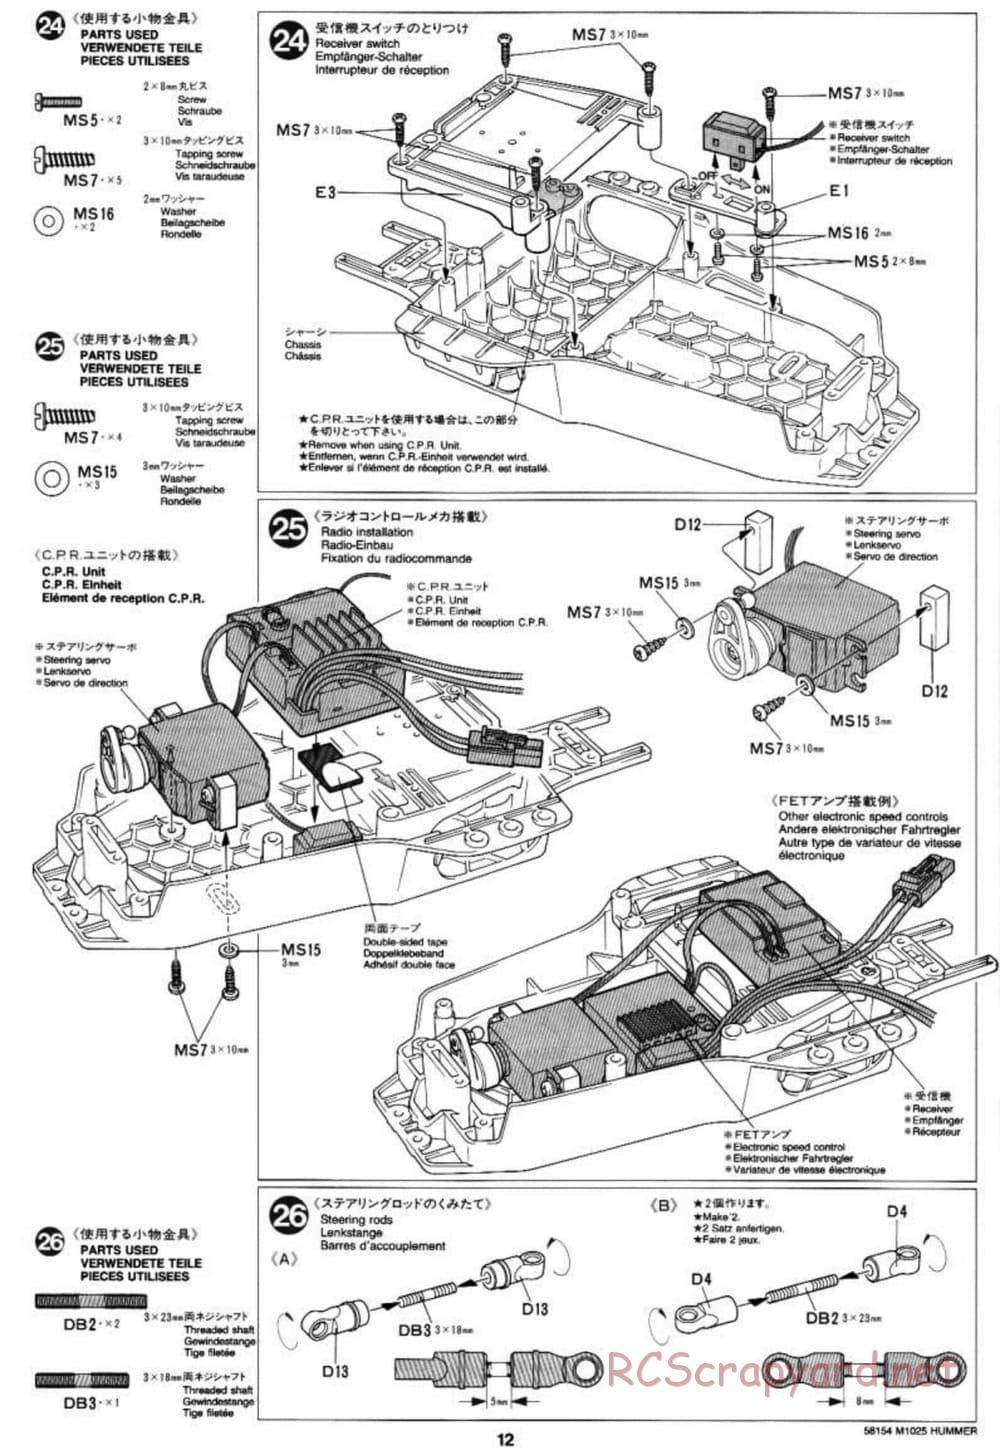 Tamiya - M1025 Hummer - TA-01 Chassis - Manual - Page 12